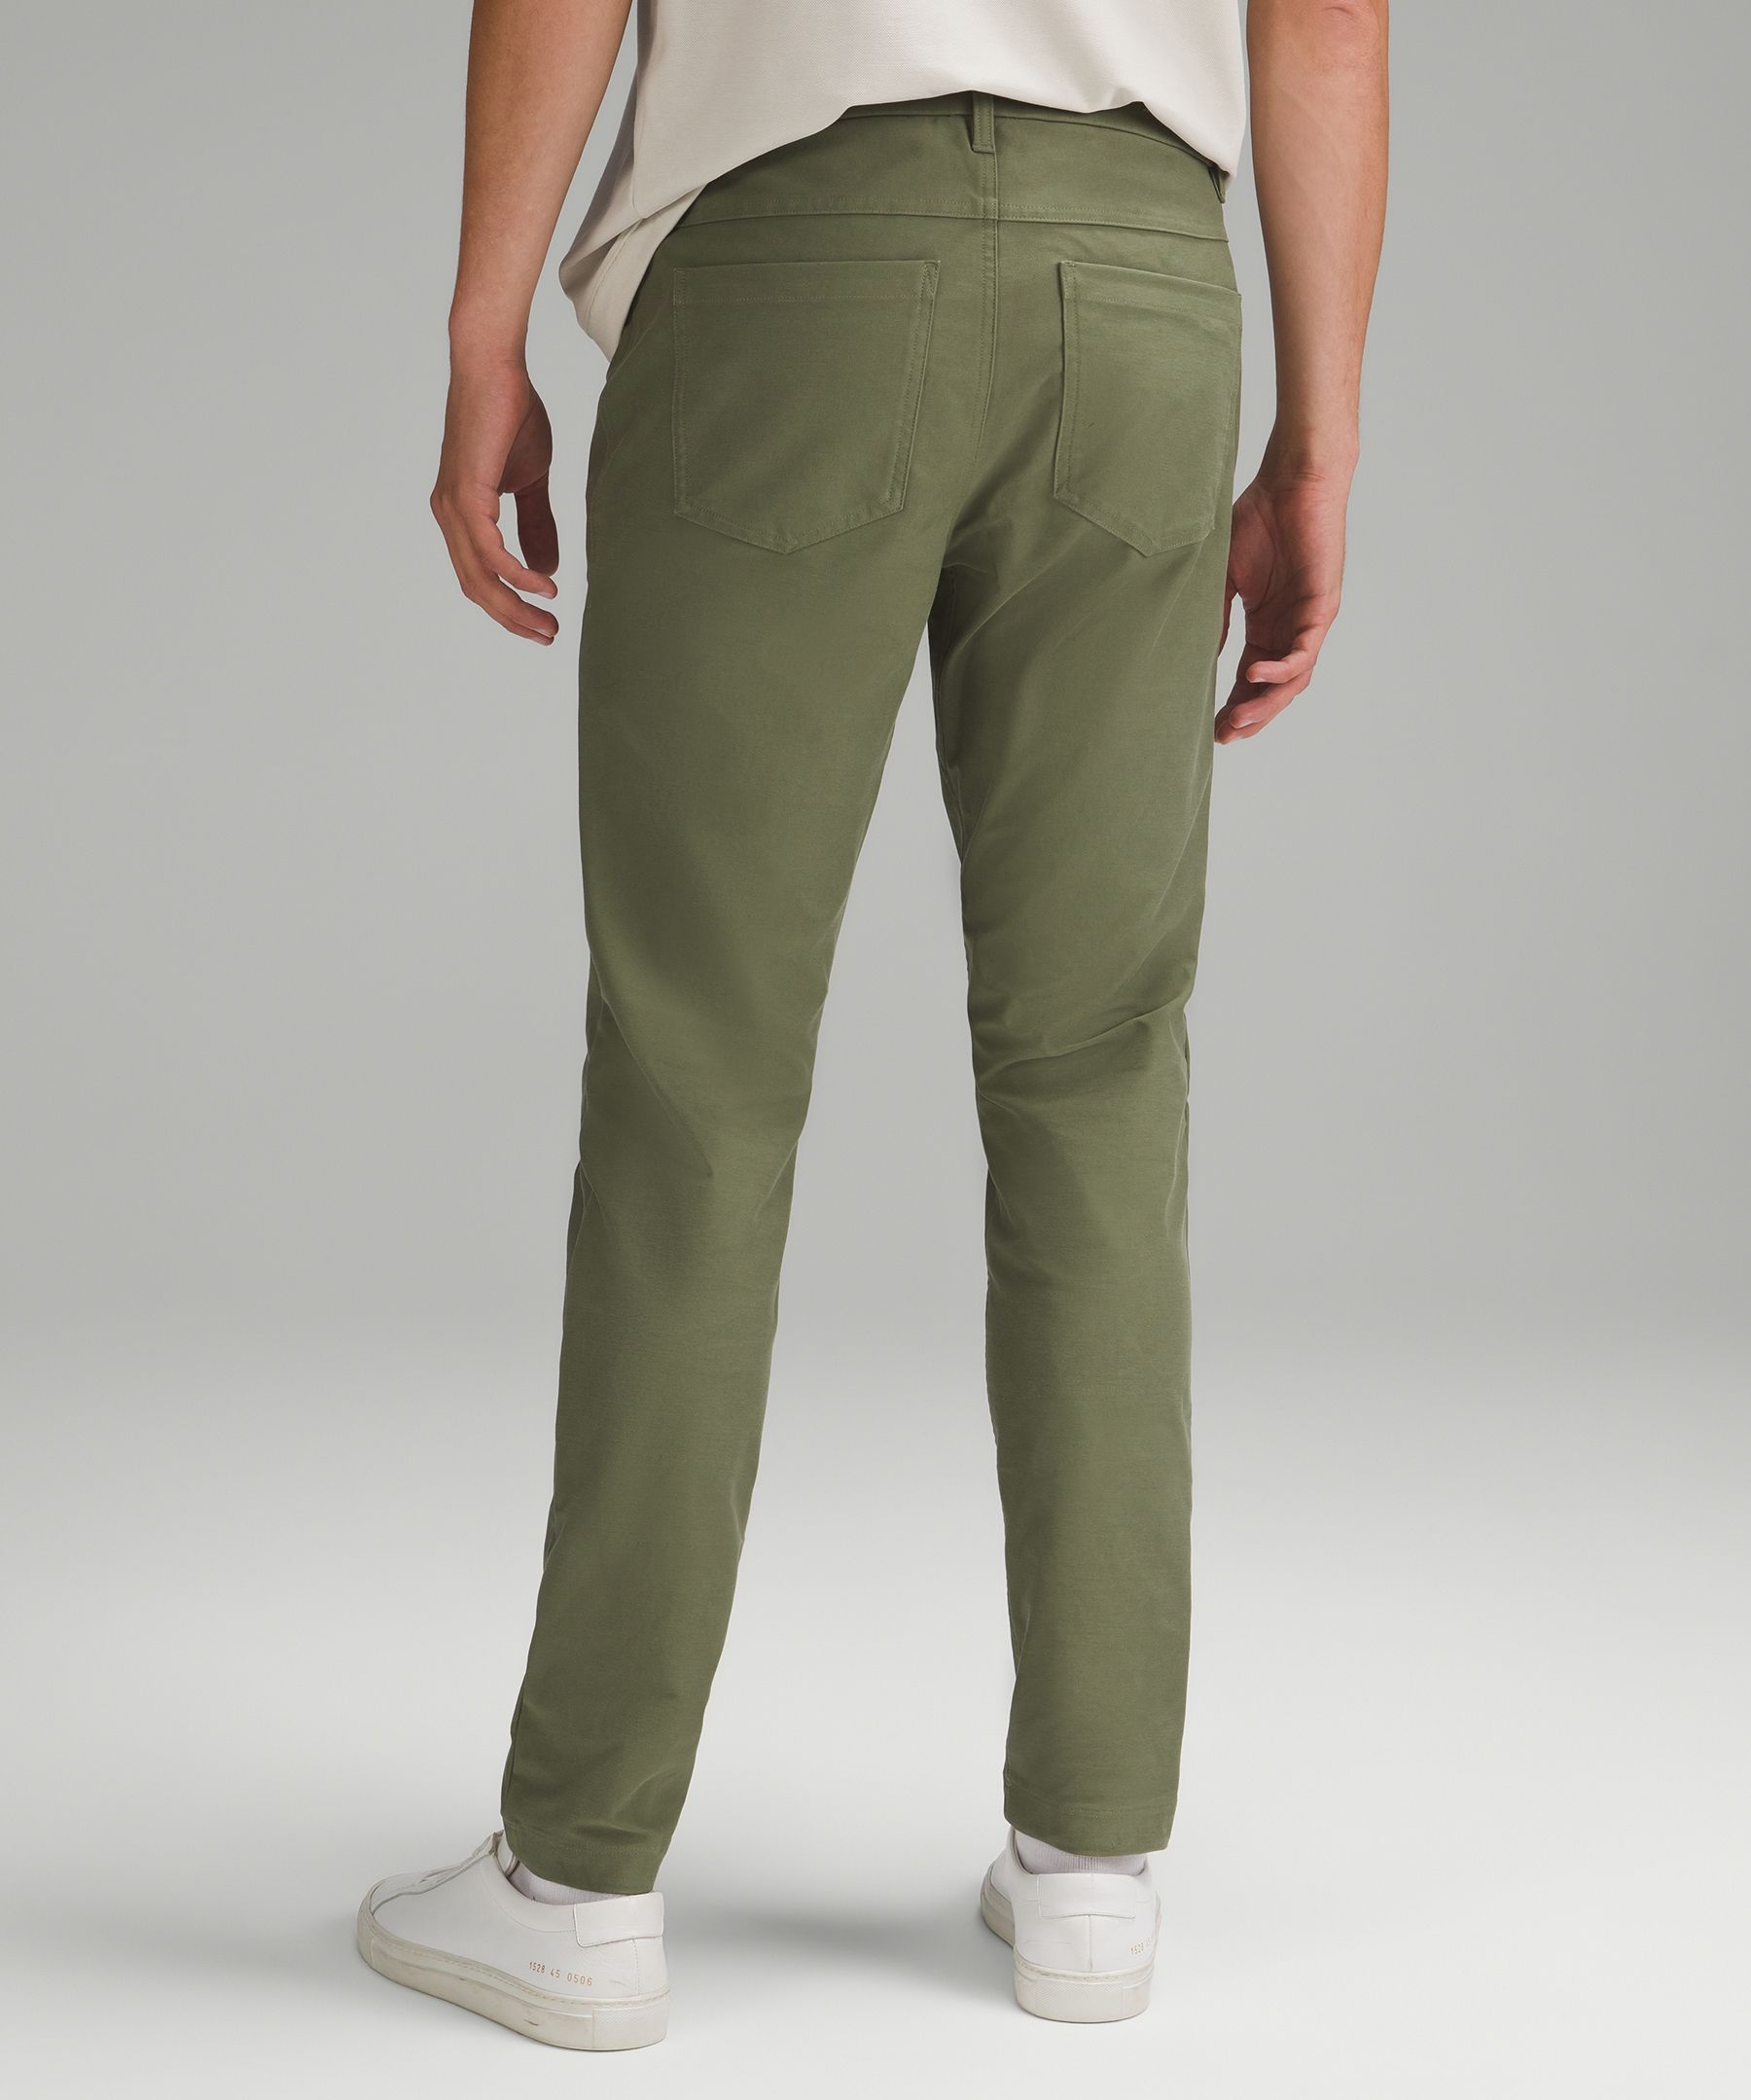 Lululemon athletica ABC Slim-Fit Pant 34 *Utilitech, Men's Trousers